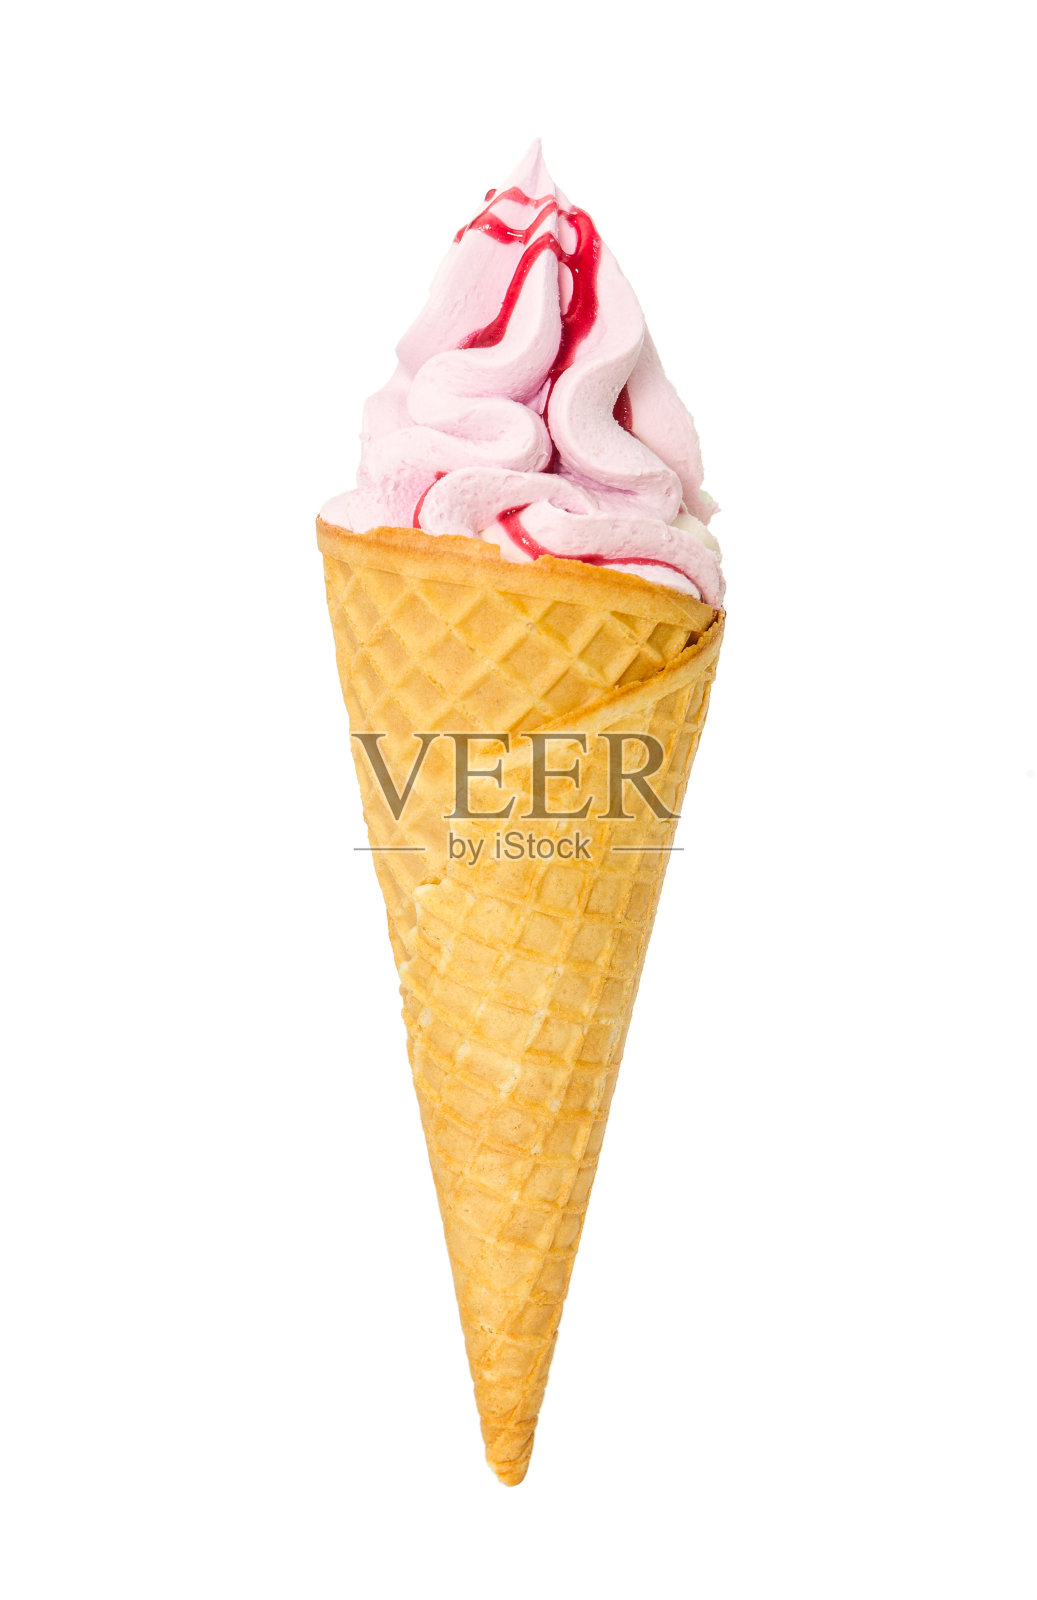 草莓冰淇淋加糖浆的华夫蛋筒照片摄影图片